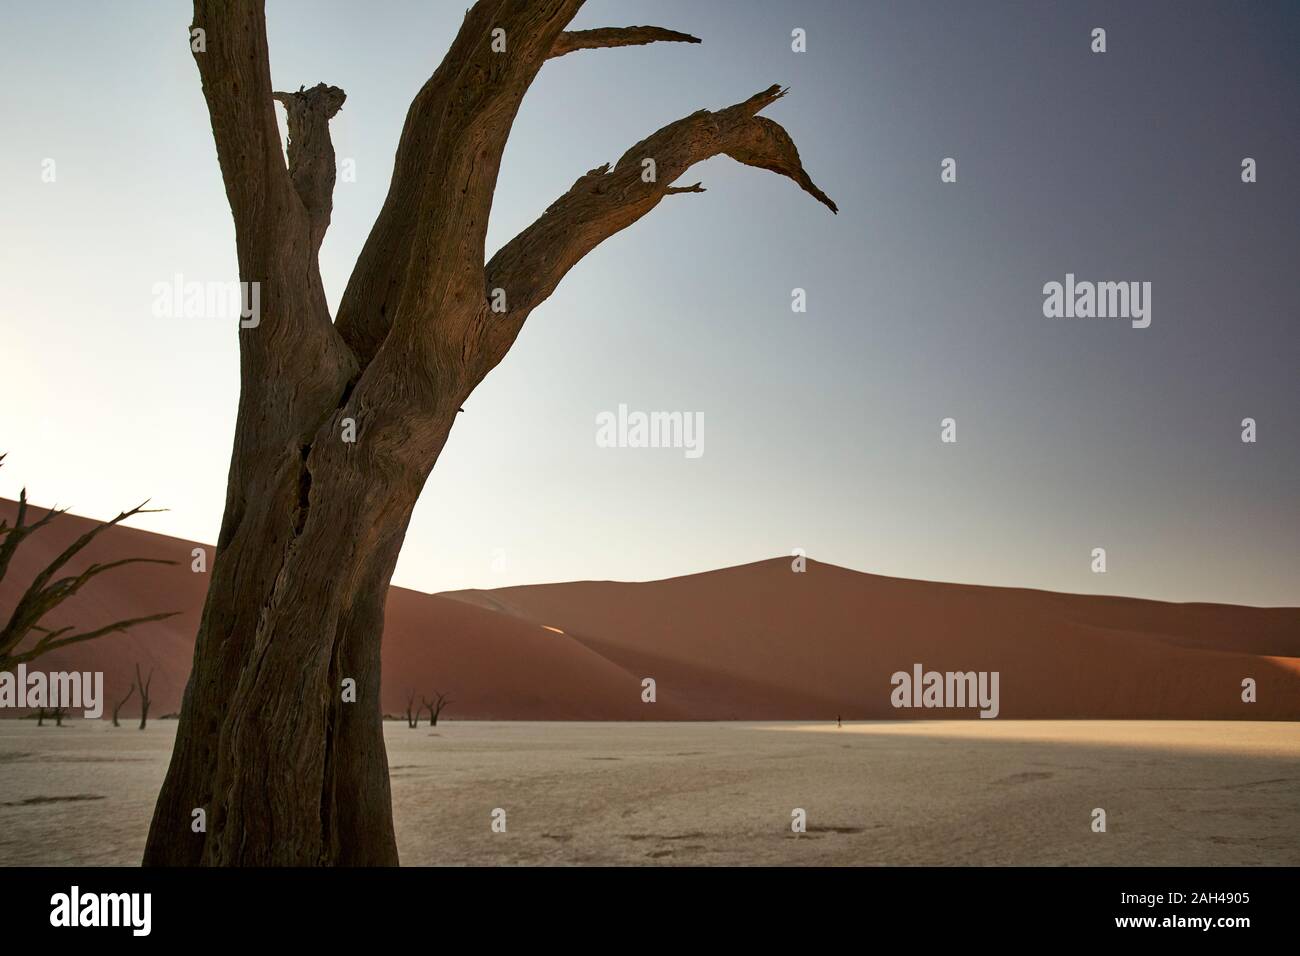 Dead tree in Deadvlei at sunrise, Sossusvlei, Namib desert, Namibia Stock Photo